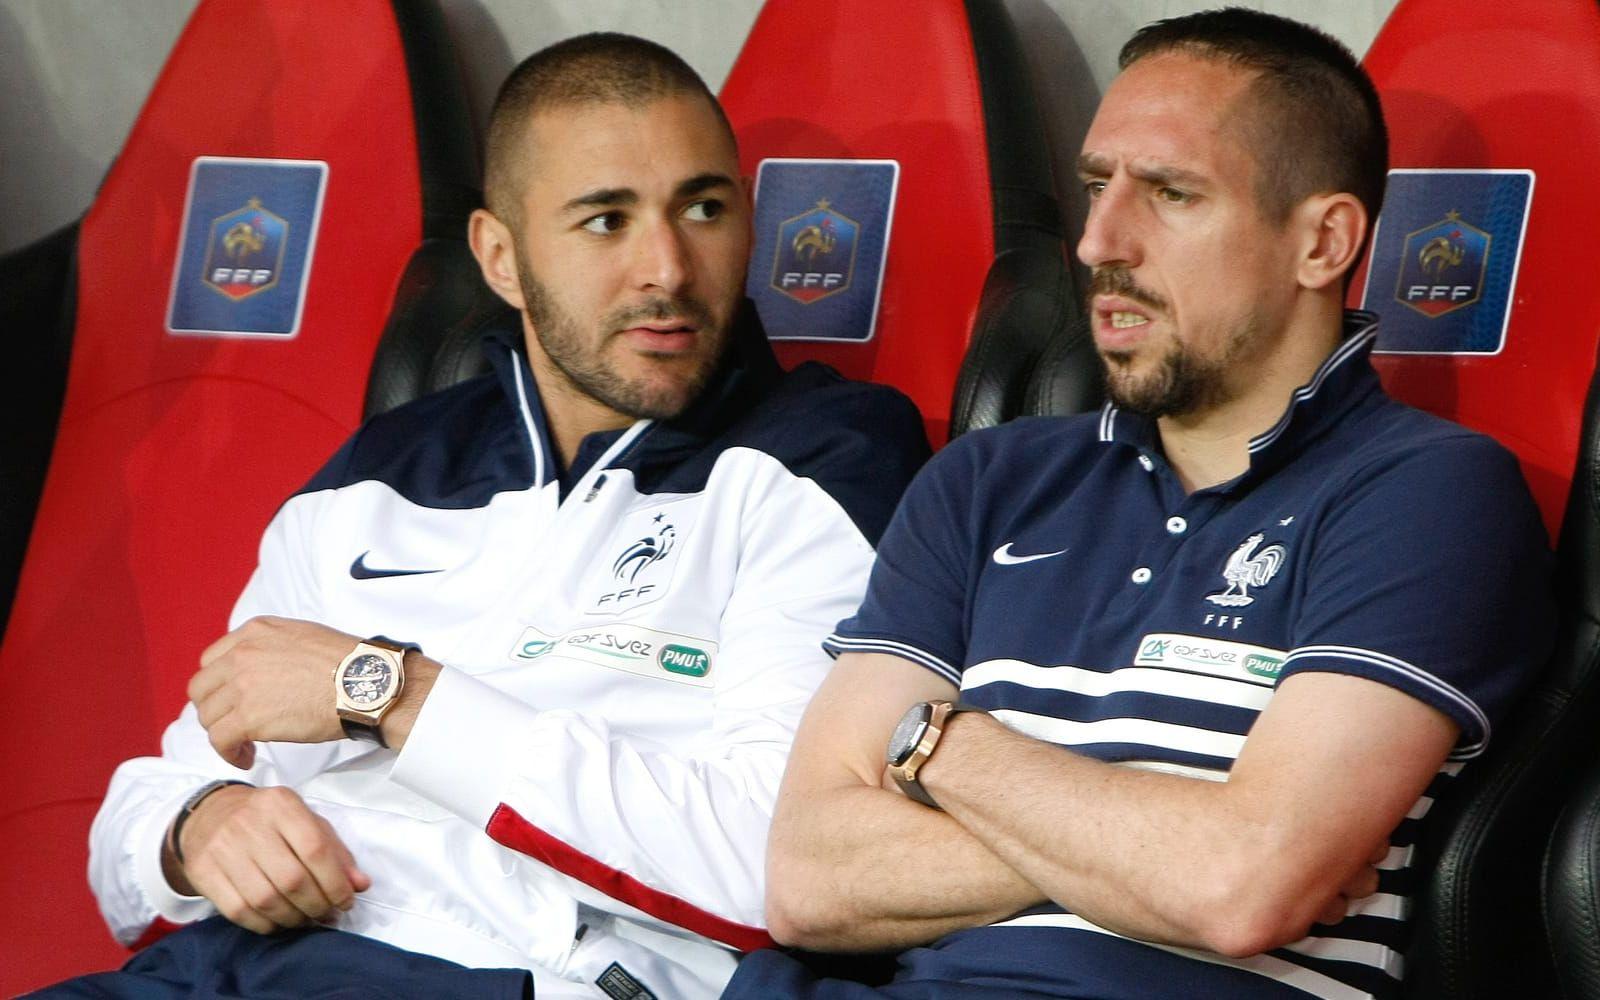 6. Karim Benzema och Franck Ribéry är två av Frankrikes mest talangfulla fotbollsspelare på 2000-talet. Men vid sidan av planen har de ställt till med en del tveksamheter. Först:Foto: TT